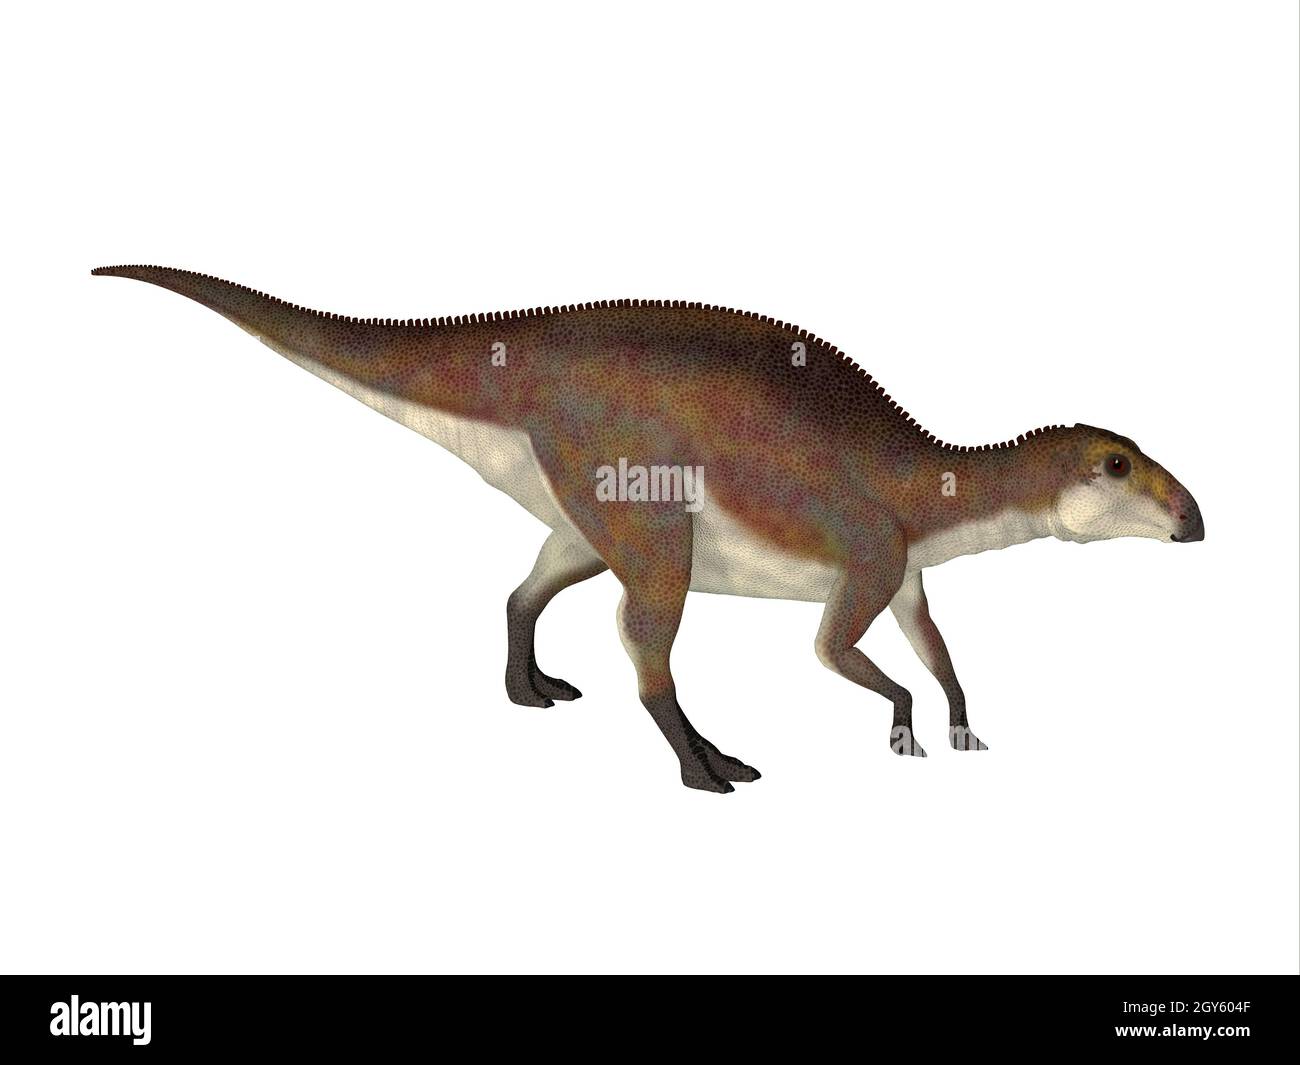 Brachylophosaurus était un dinosaure qui vivait Hadrosaures herbivores au cours de la période du Crétacé d'Amérique du Nord. Banque D'Images